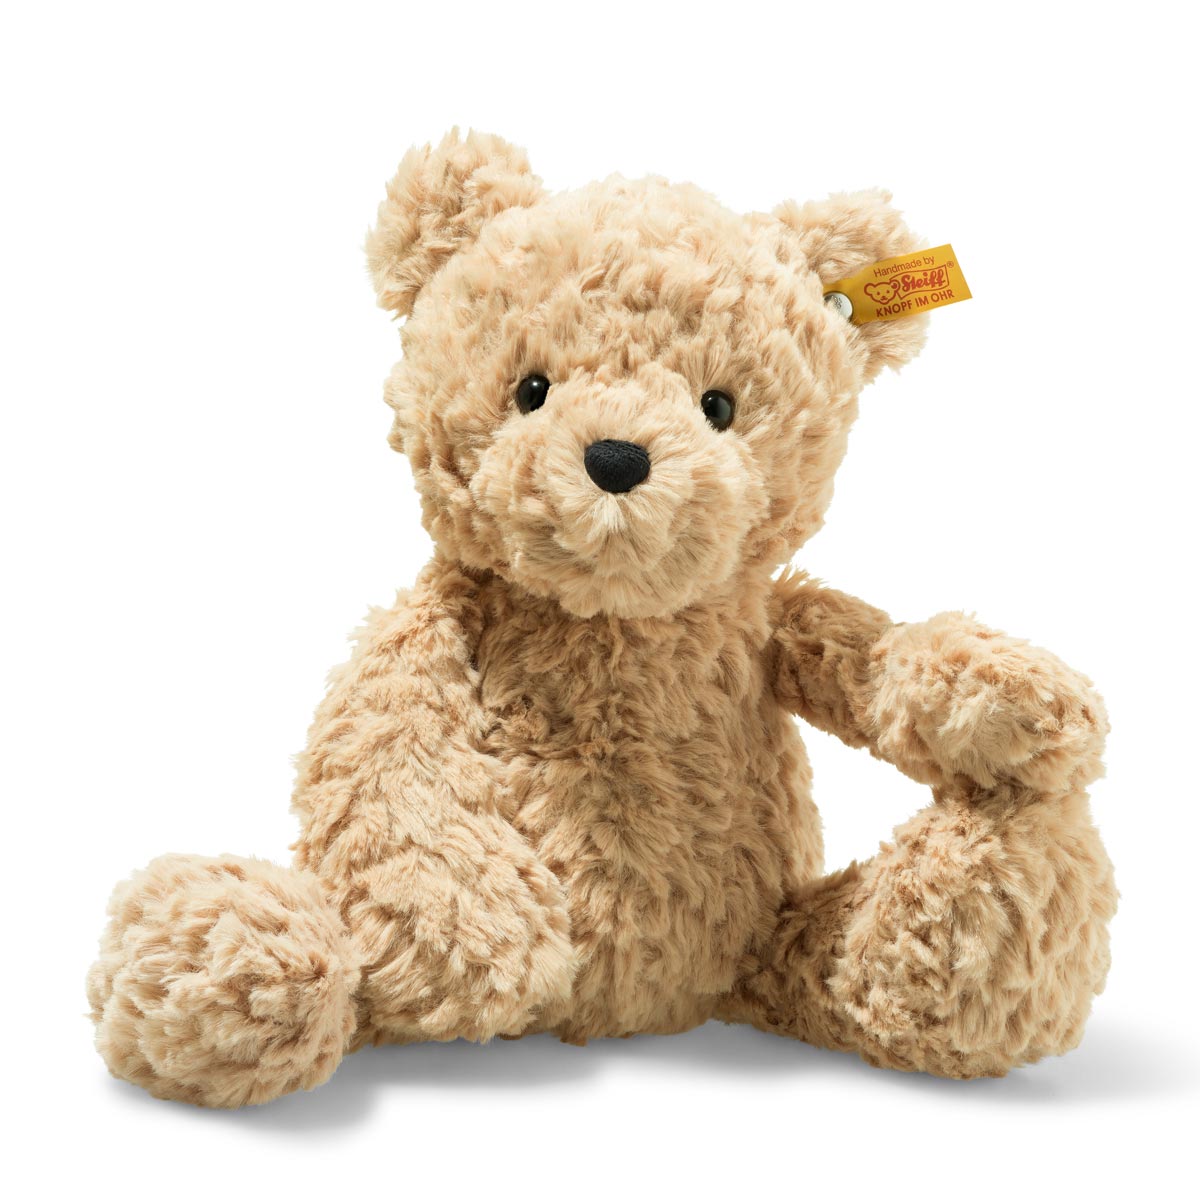 Steiff Soft & Cuddly Friends Jimmy the Teddy Bear - 30 cm